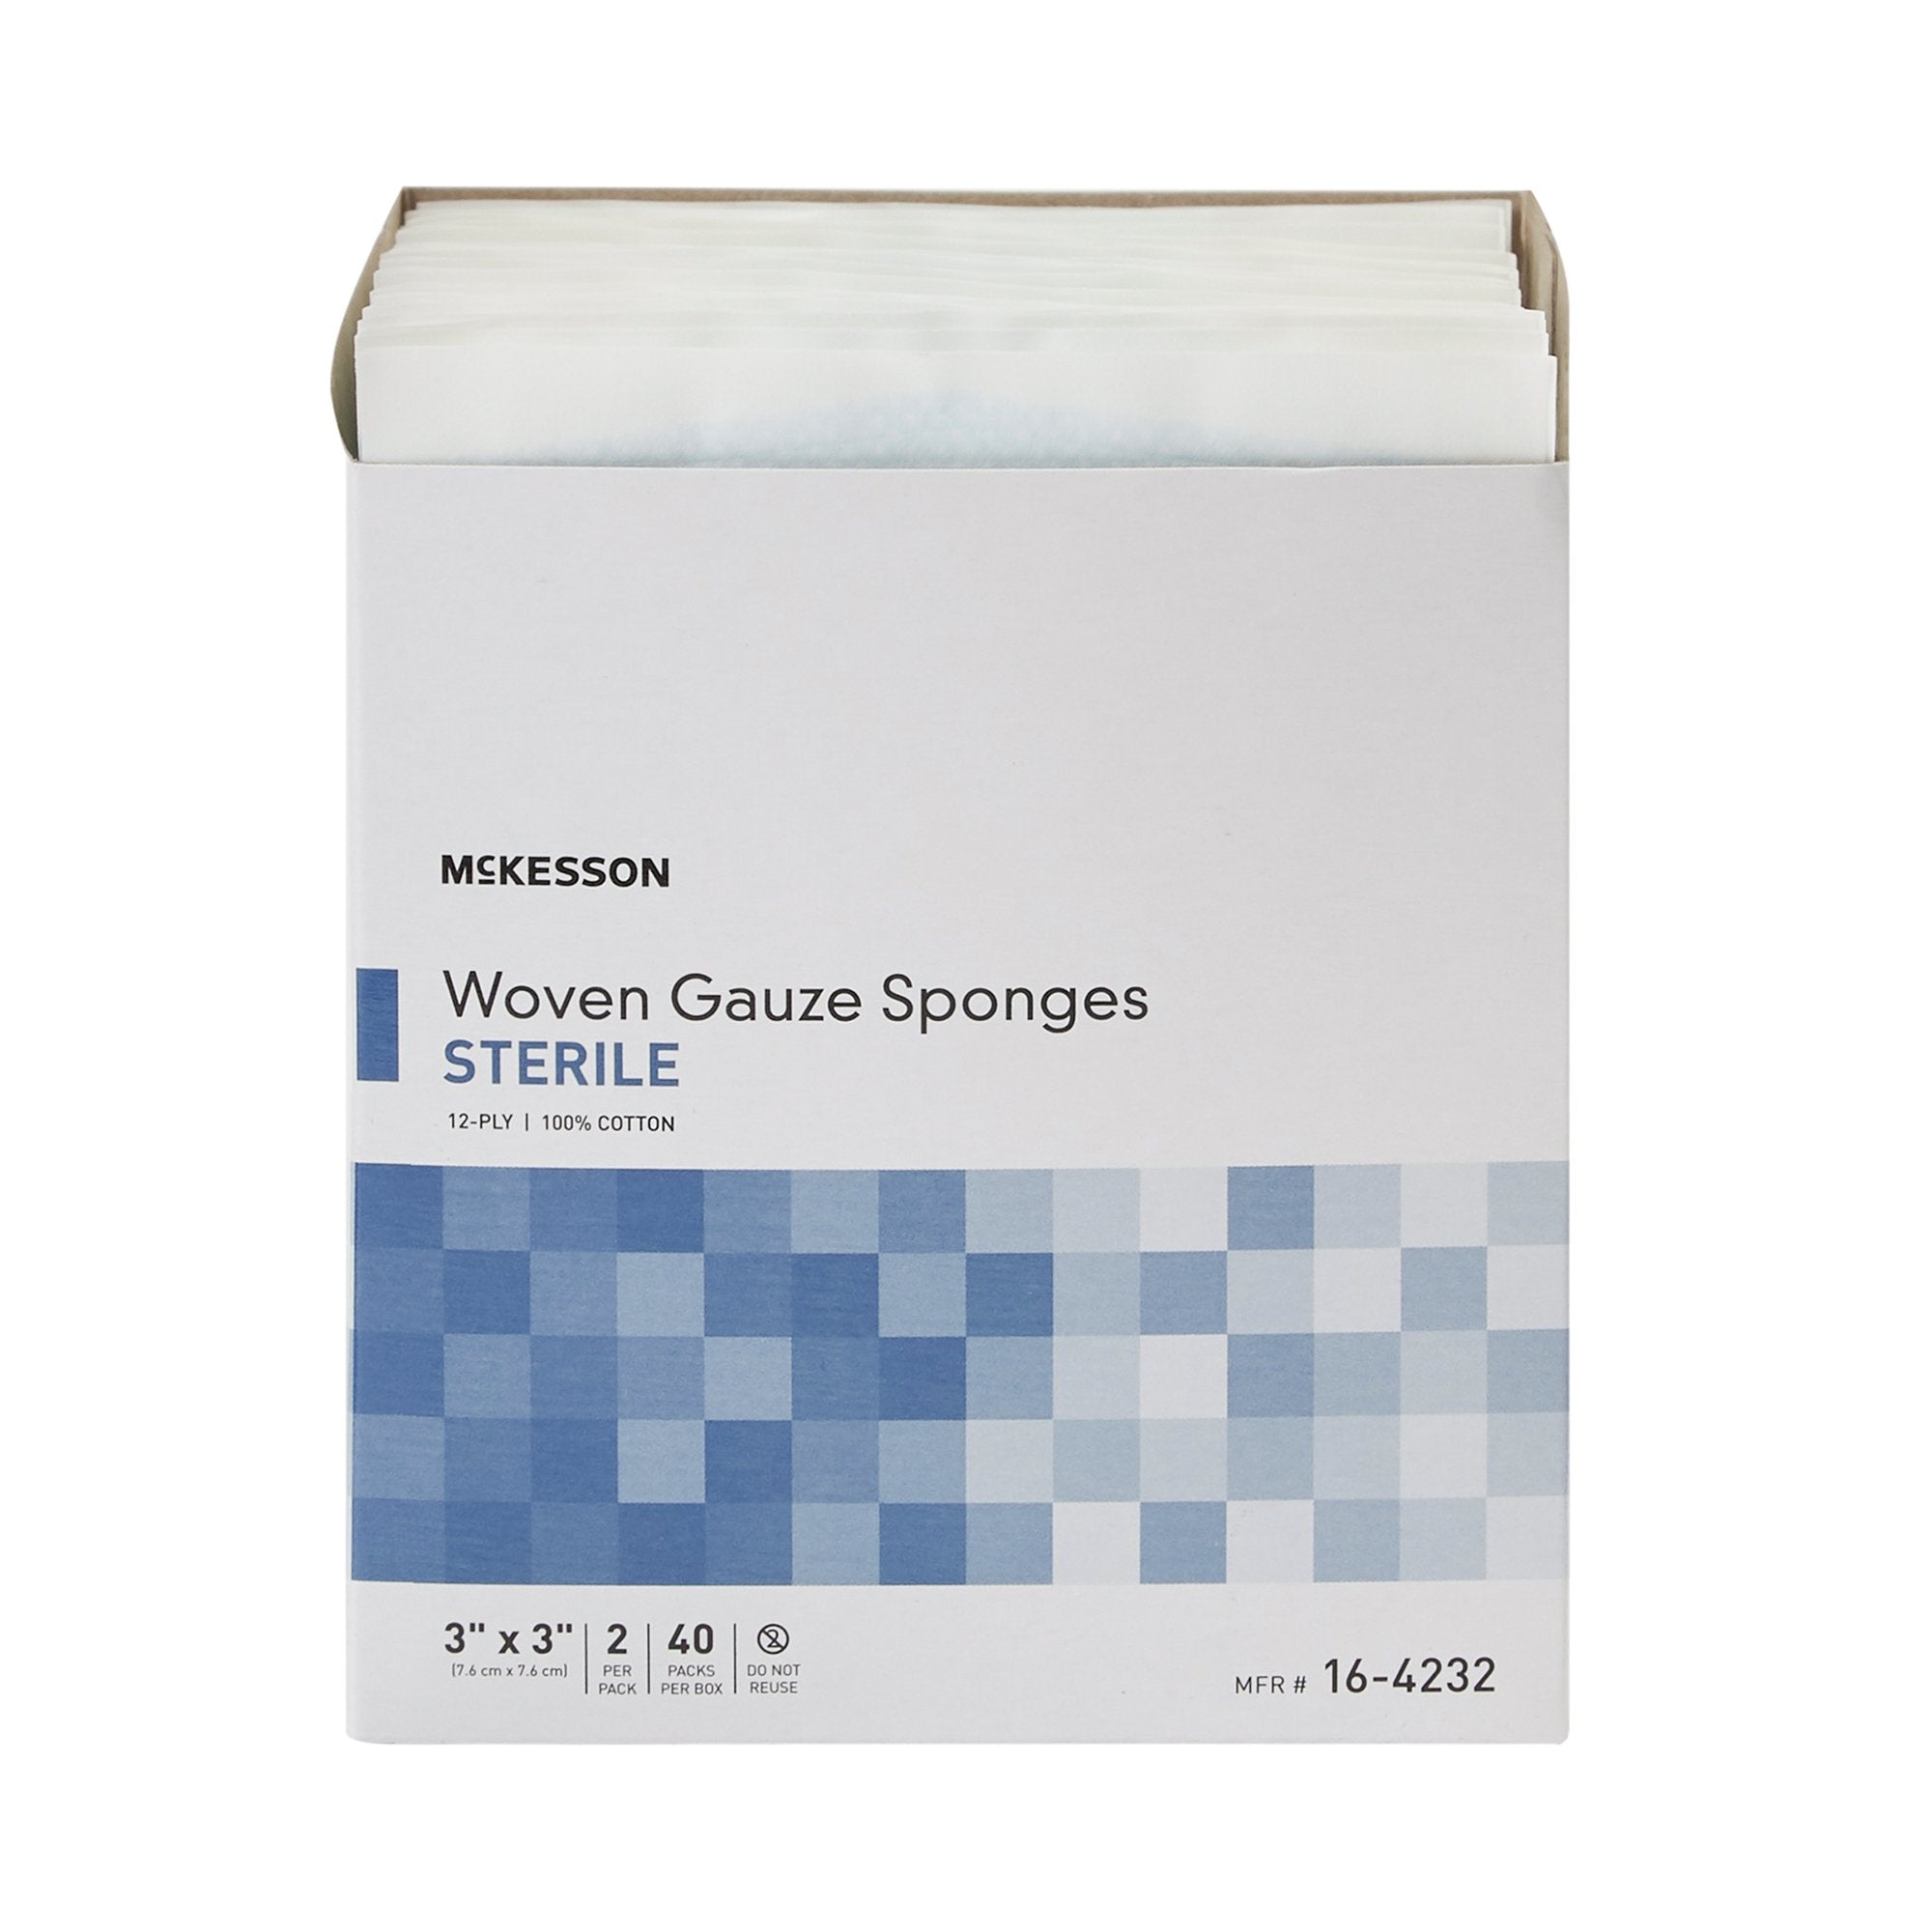 Gauze Sponge McKesson 3 X 3 Inch 2 per Pack Sterile 12-Ply Square